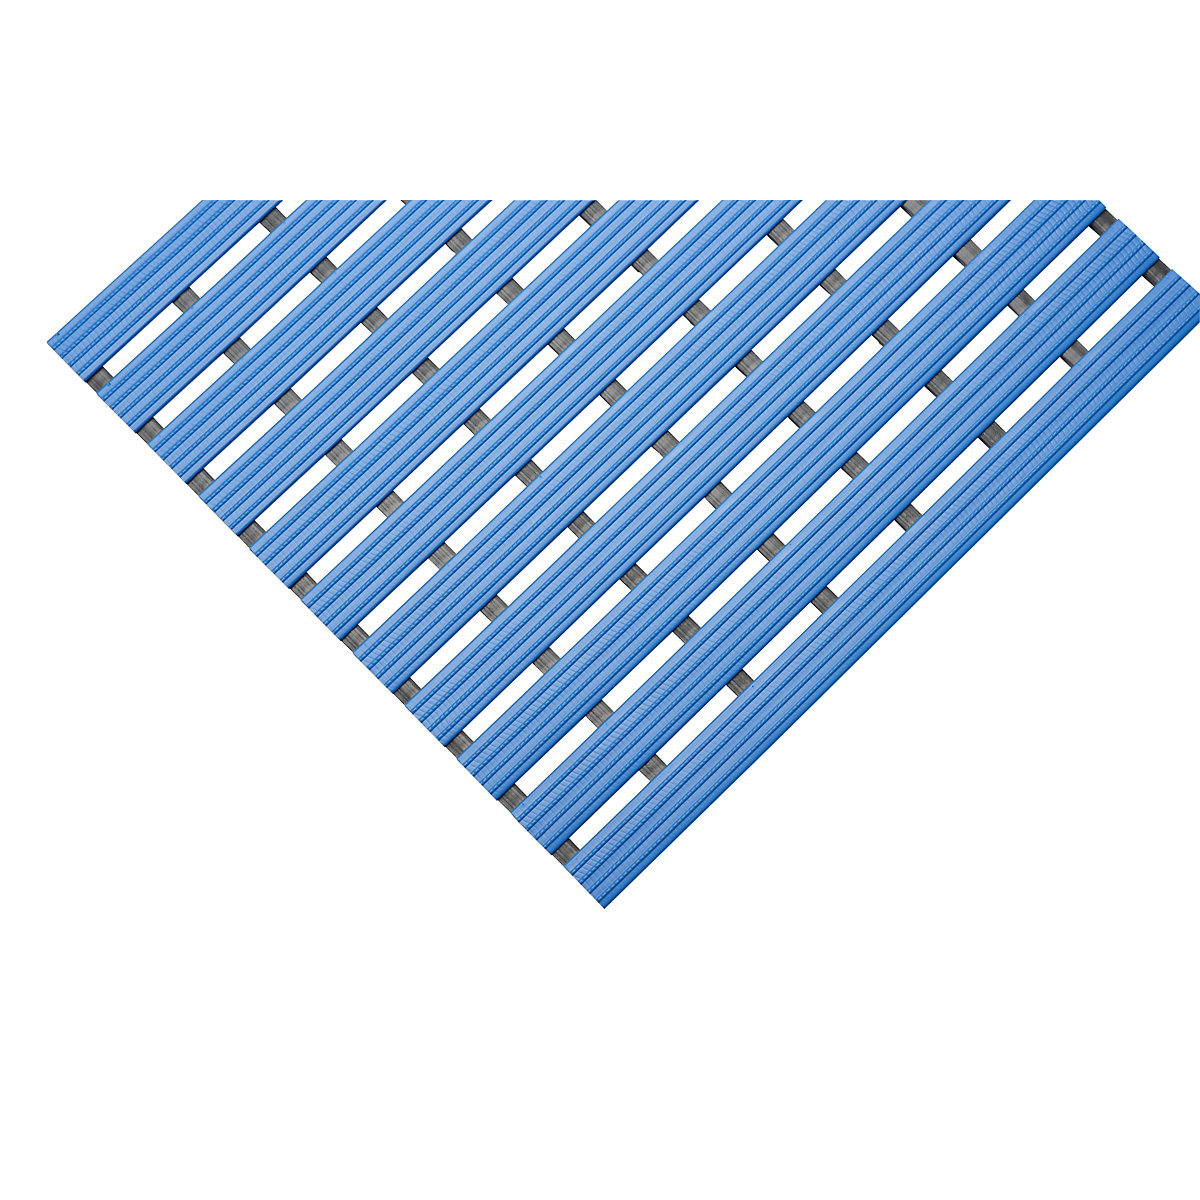 Kunststof mat, per str. mtr., loopvlak van harde kunststof, antislip, breedte 600 mm, blauw-11